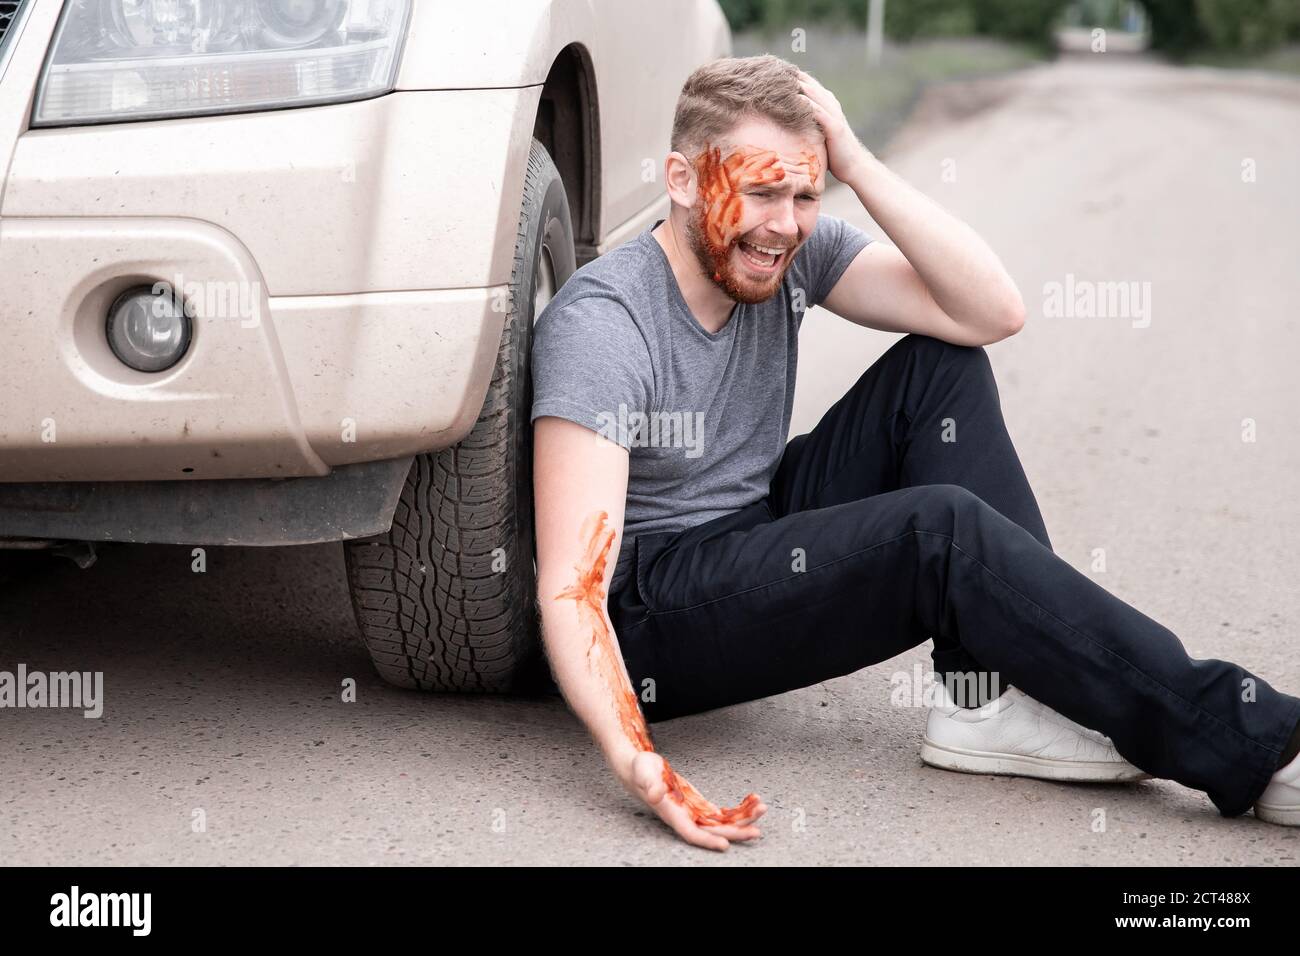 Il giovane si siede con la testa sanguinata vicino alla ruota dell'automobile, urlando e rammaricandosi atto Foto Stock